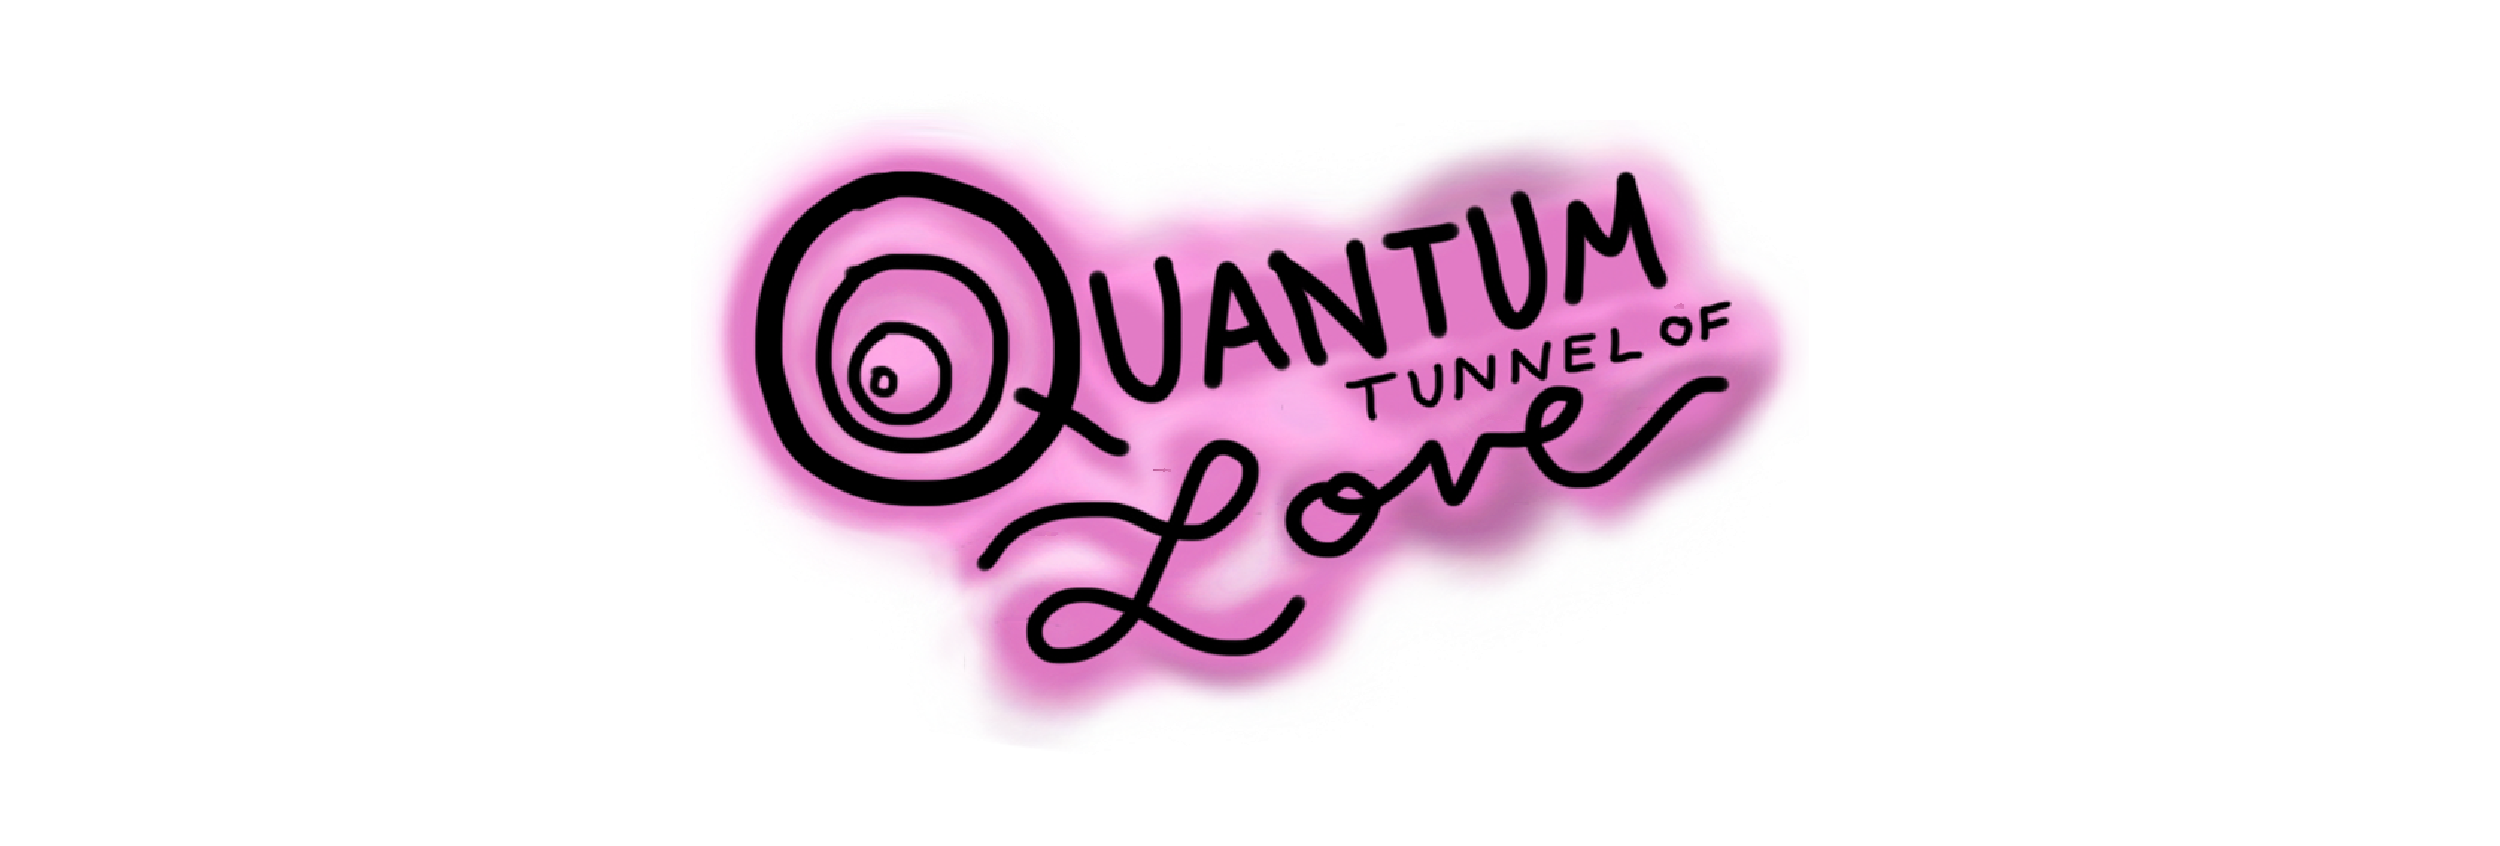 Quantum Tunnel of Love